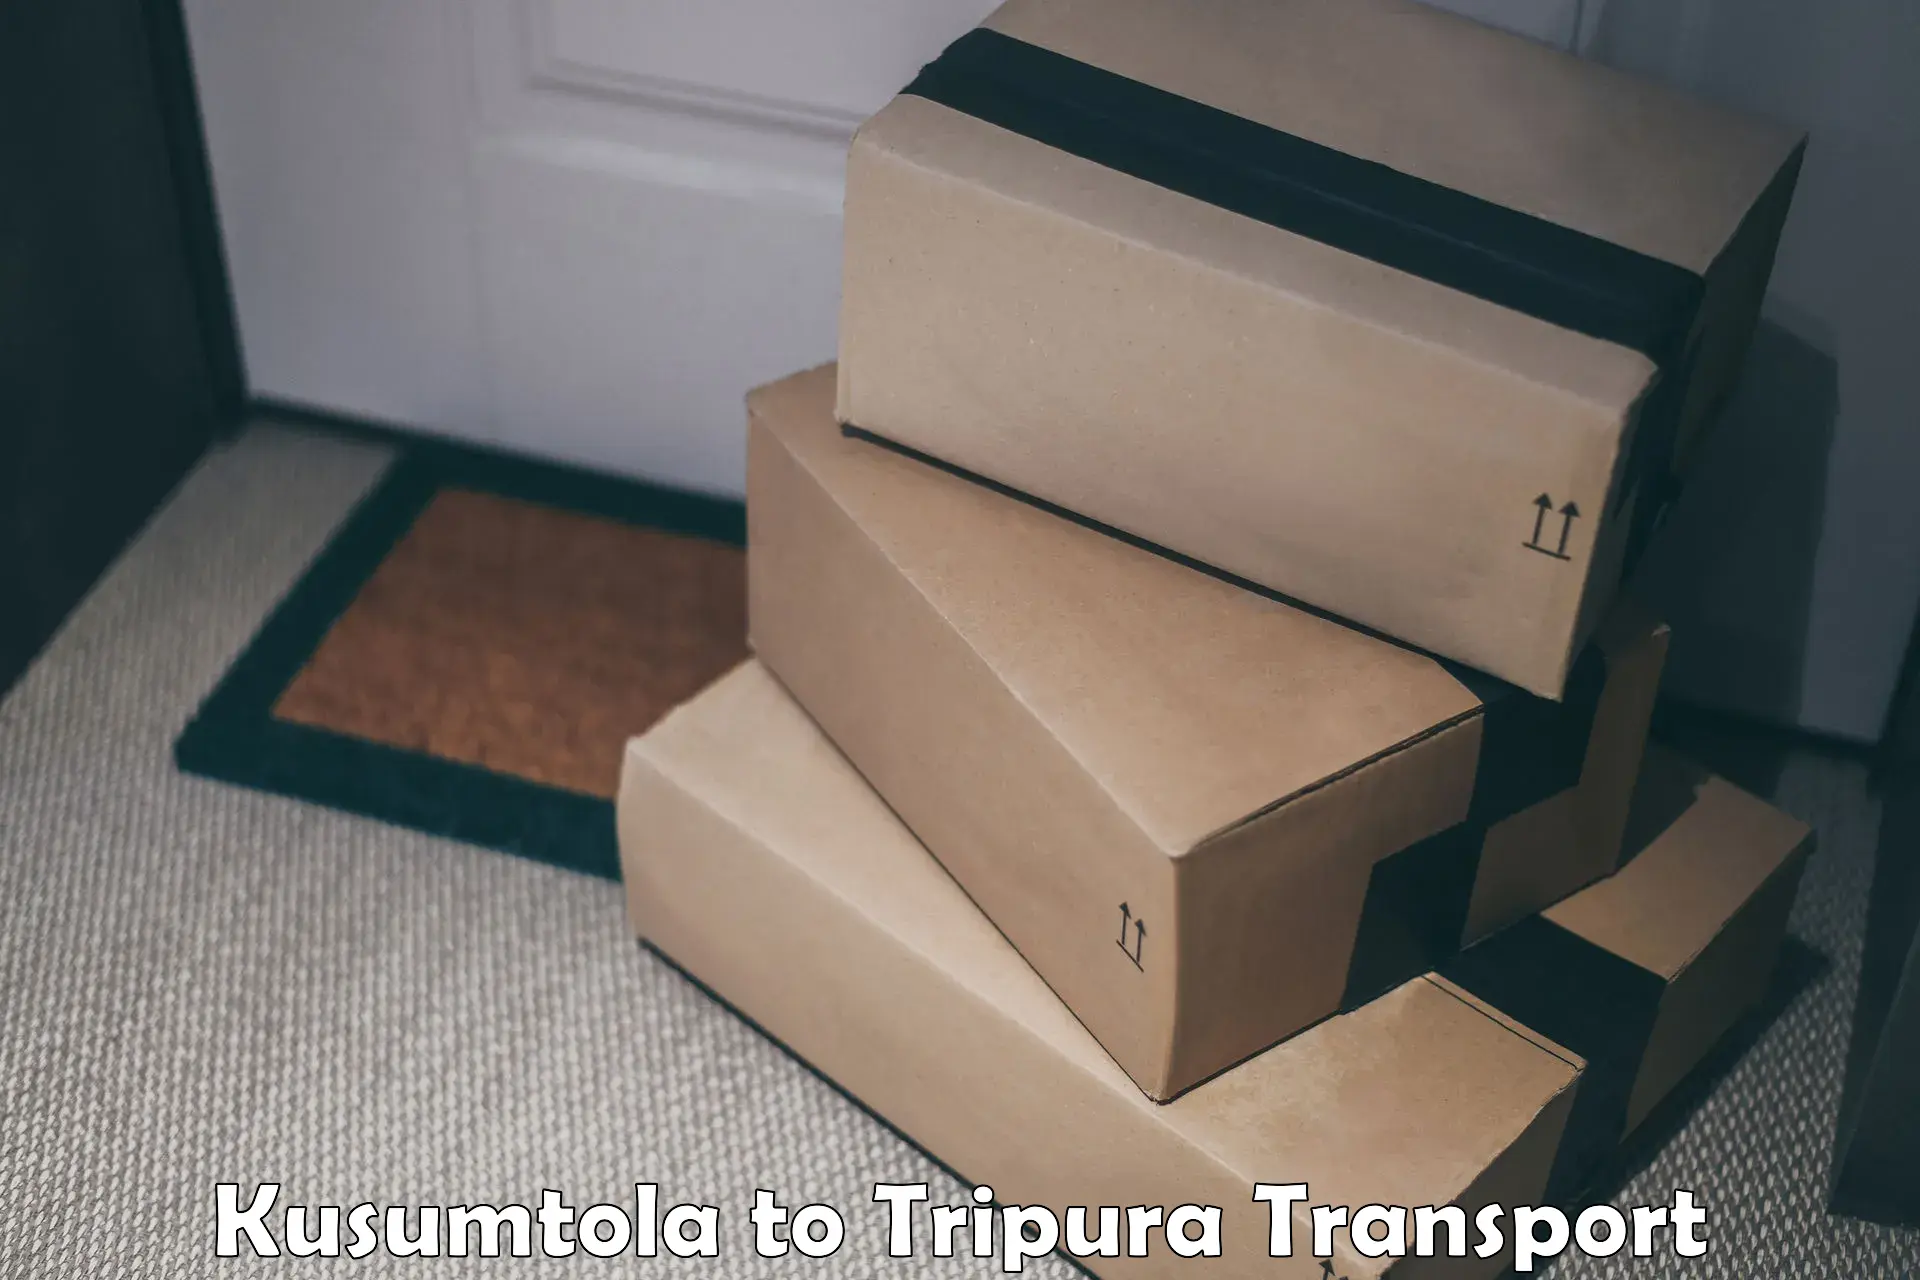 Shipping partner Kusumtola to West Tripura